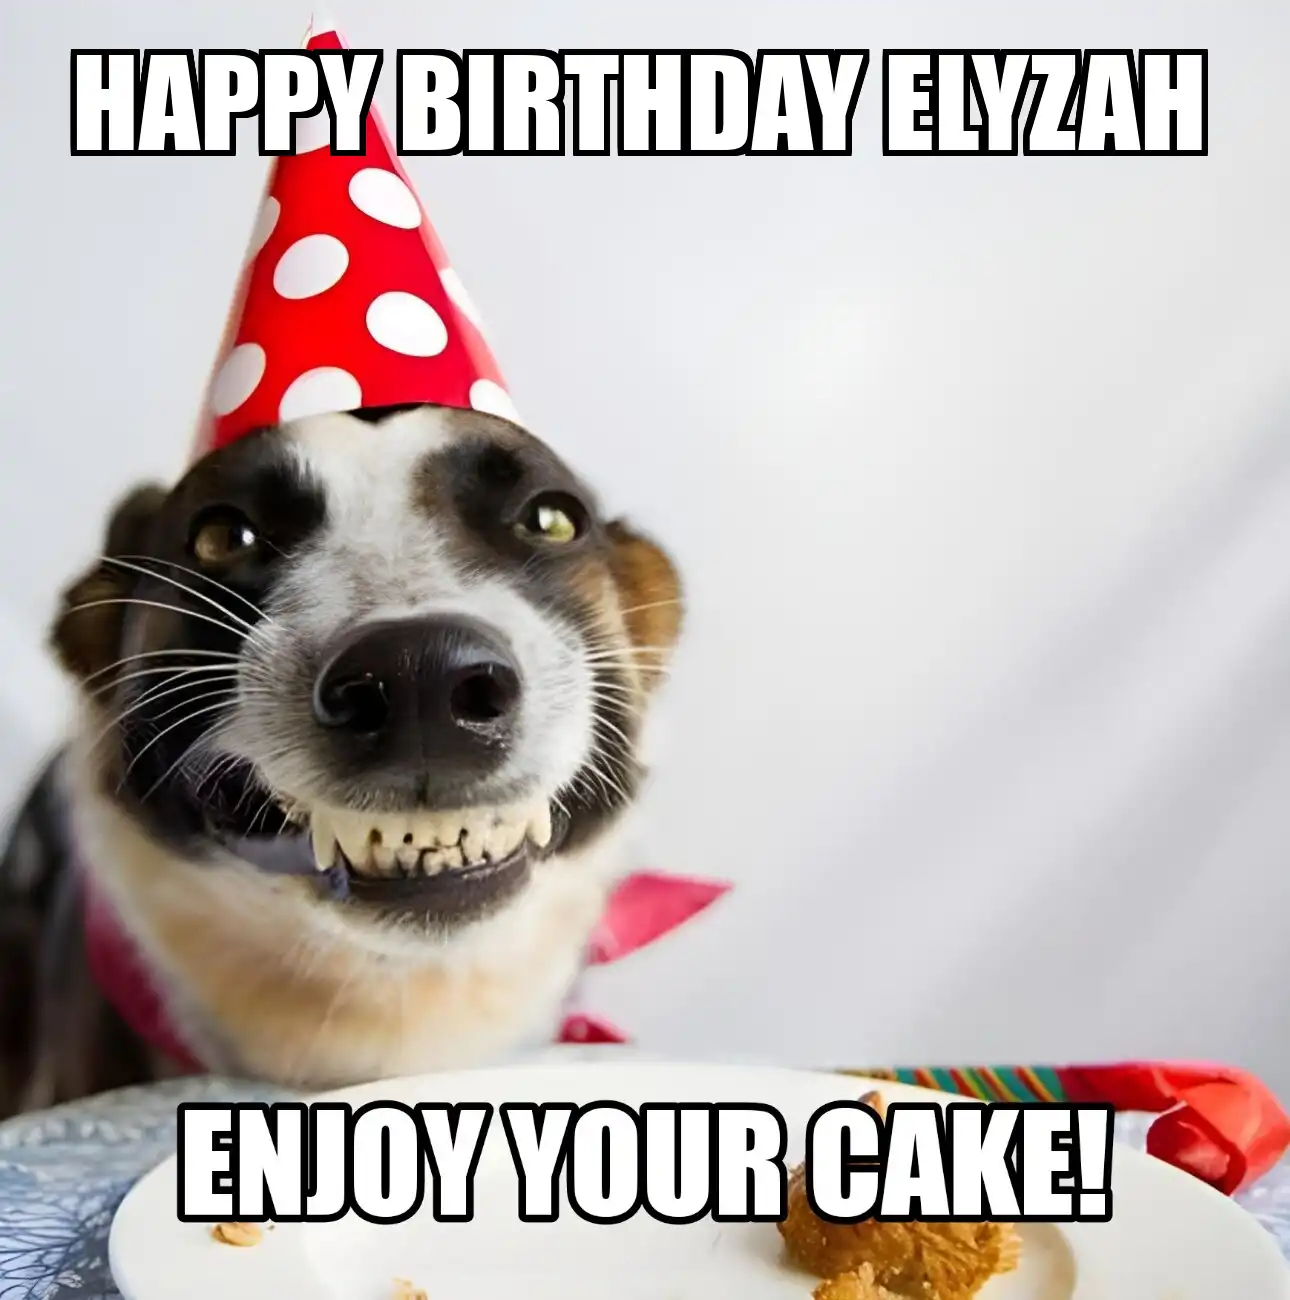 Happy Birthday Elyzah Enjoy Your Cake Dog Meme